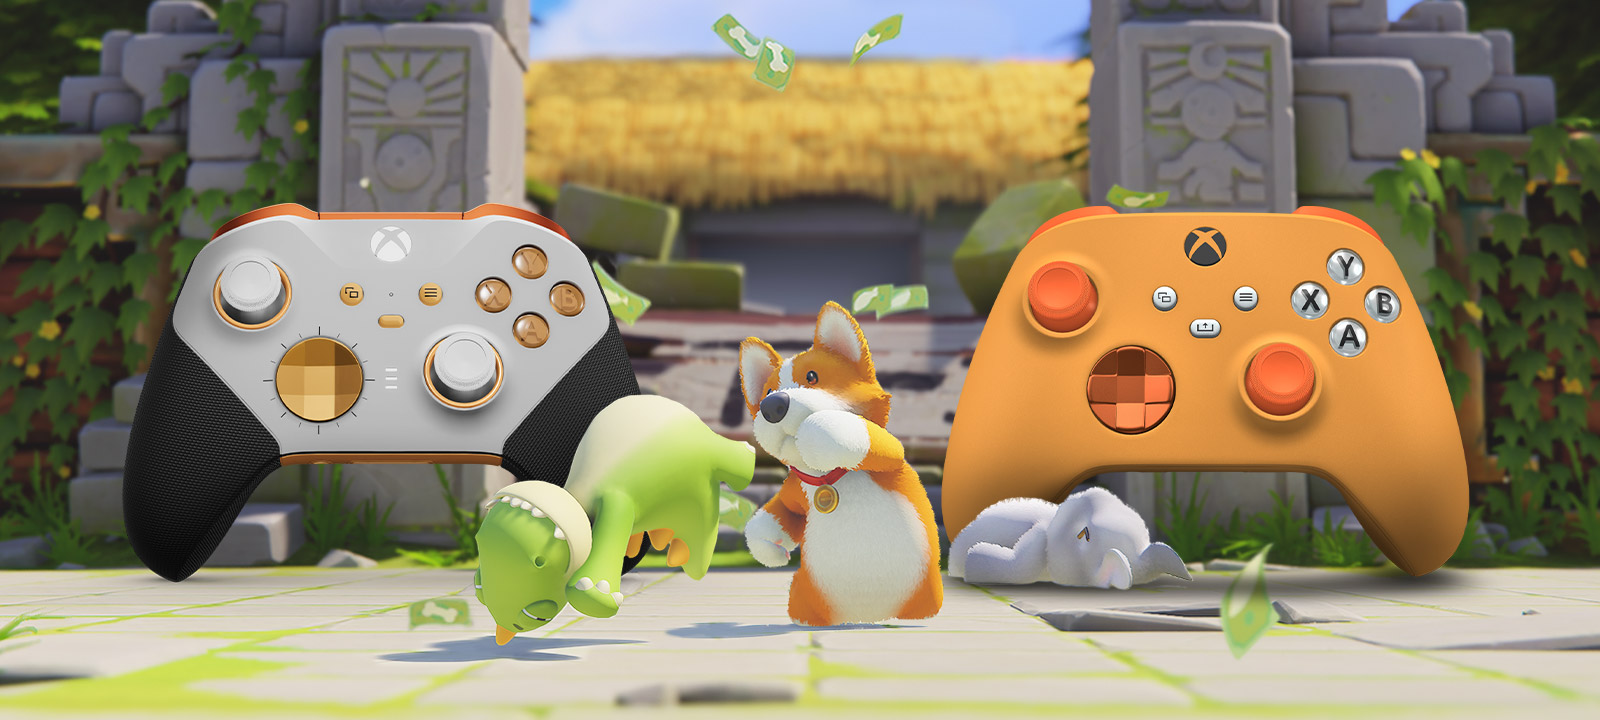 『Party Animals』。Xbox Design Lab のロゴでカスタマイズされた 2 つのコントローラの前で、大乱闘を繰り広げるキュートな動物たち。